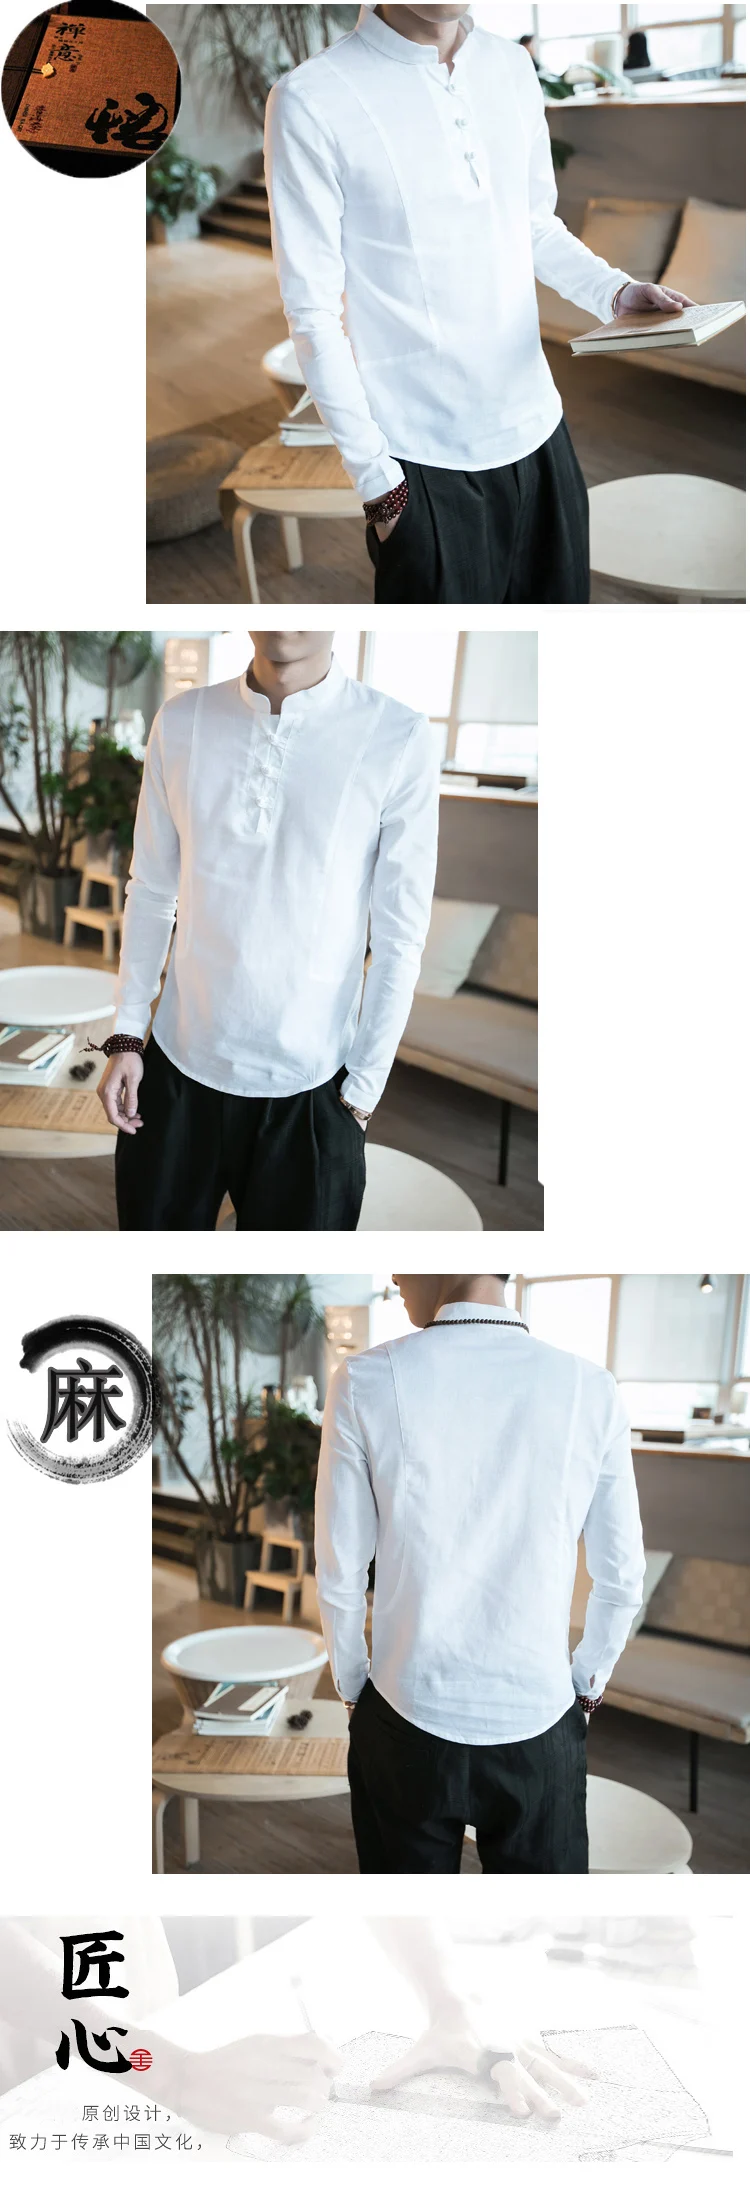 Tradictional Китайская одежда для мужчин с длинным рукавом Хлопок Лен рубашки кунг-фу Тай Чи Тан костюм мужские китайские Топы CN-036